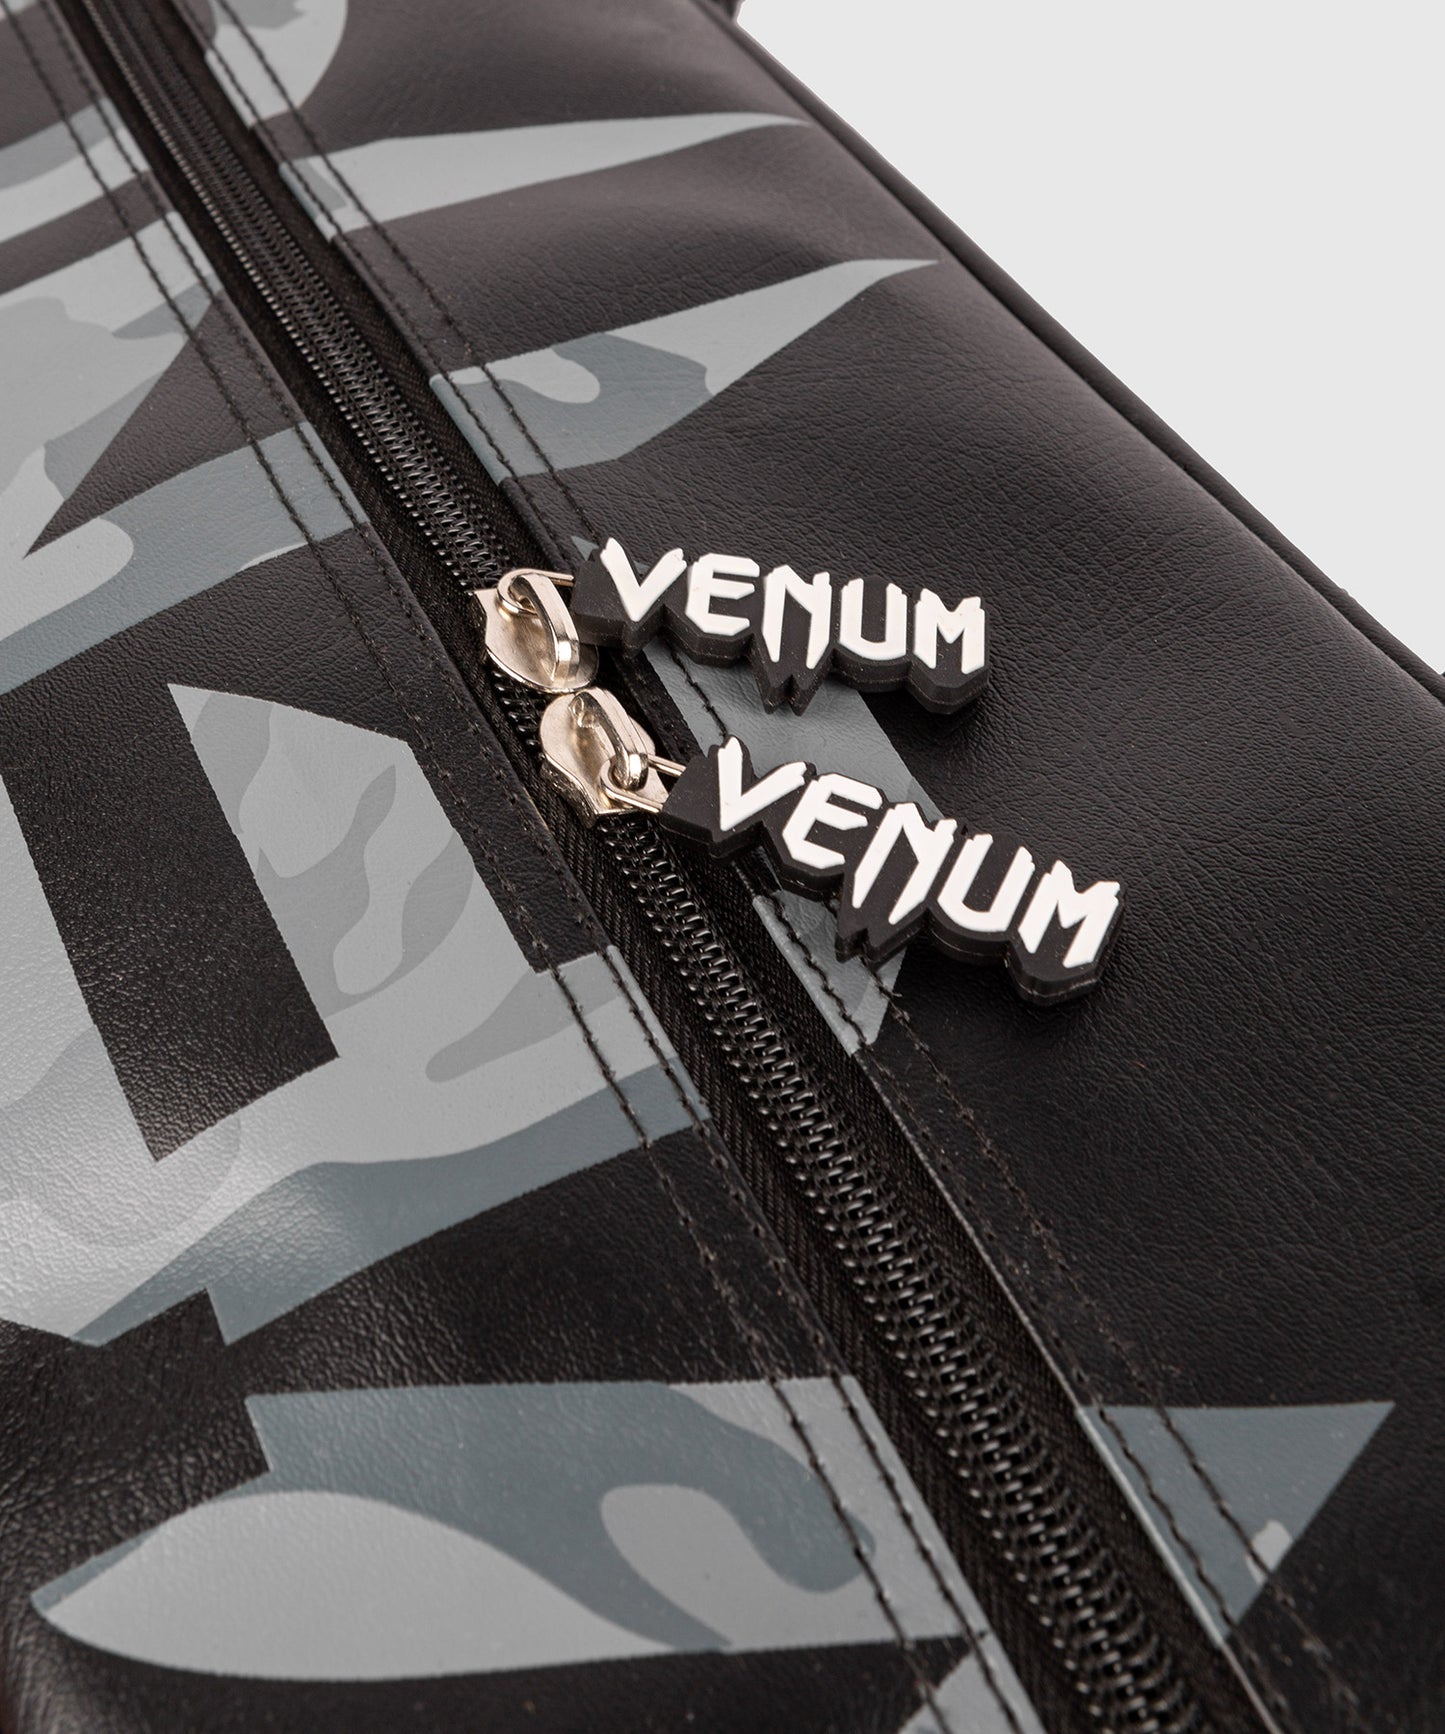 Venum Origins Tasche - Schwarz/Urban Camo - Kompaktes Modell